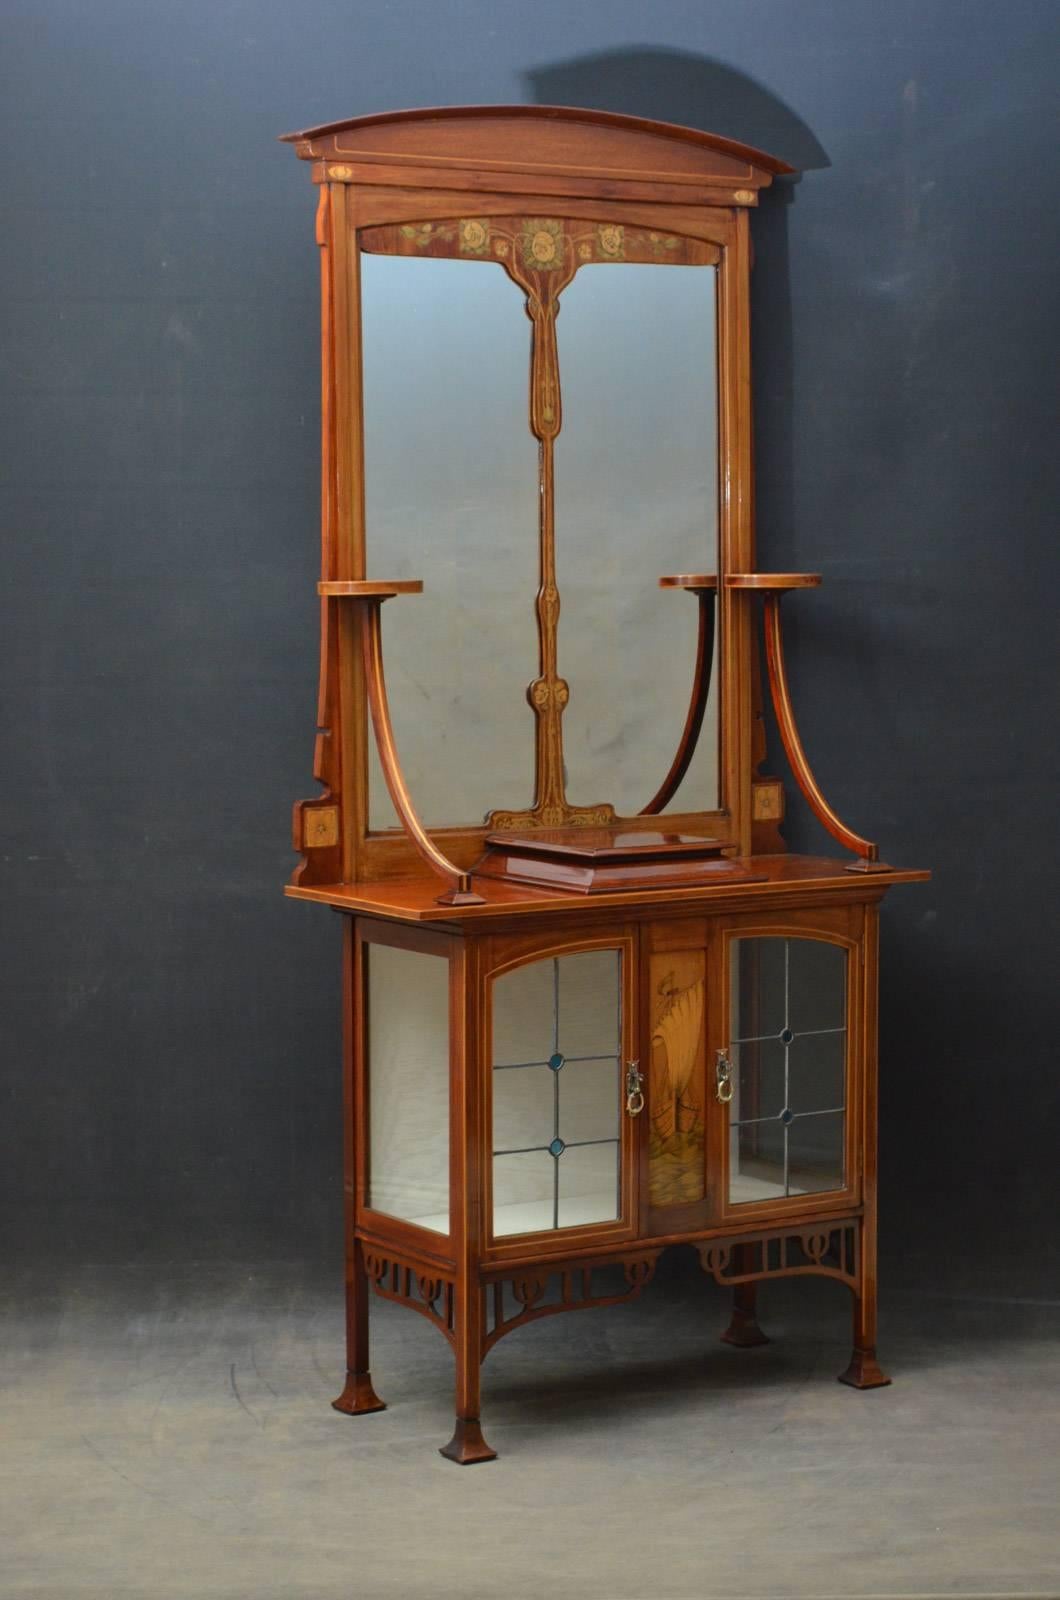 Sn4337 Elegante armario de recibidor o mueble auxiliar Art Nouveau de caoba y marquetería, con crestería arqueada sobre espejo dividido flanqueado por un par de plataformas circulares sobre soportes descendentes, la base saliente tiene un panel